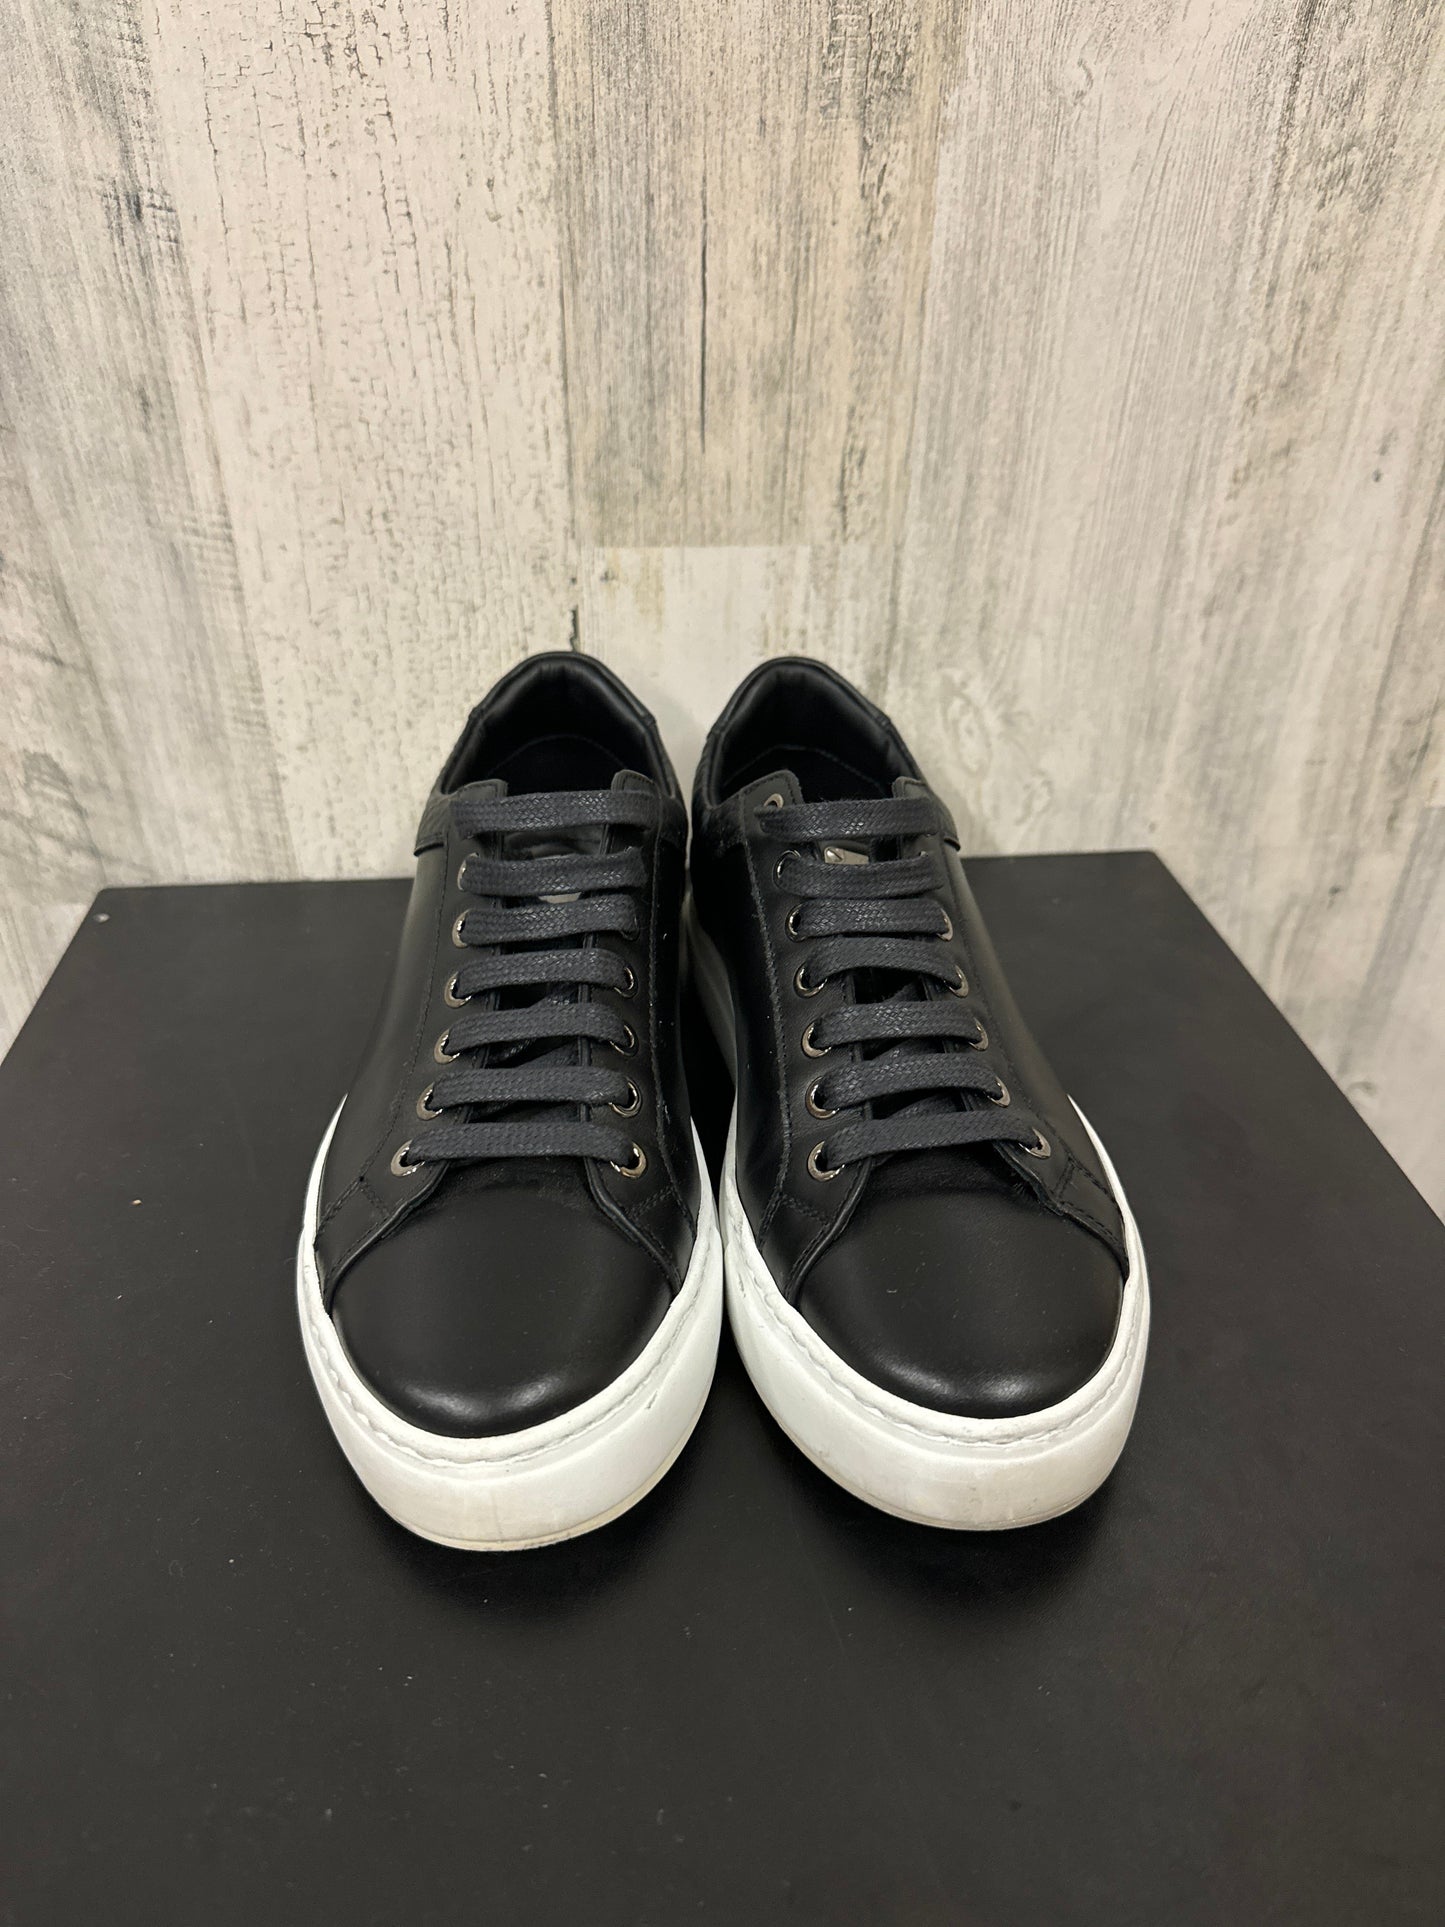 Black Shoes Luxury Designer Mcm, Size 7